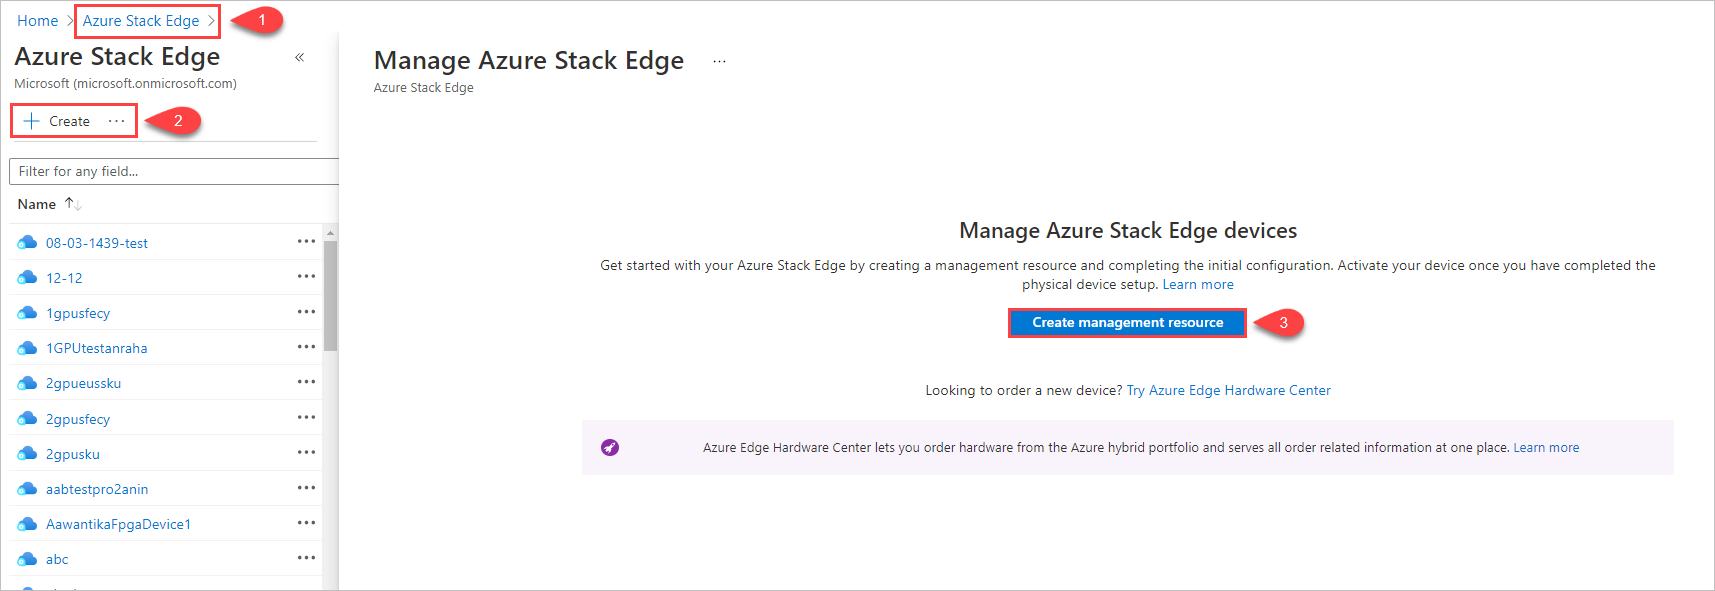 تعرض التوضيحات 3 خطوات لبدء إنشاء مورد إدارة في Azure Stack Edge.